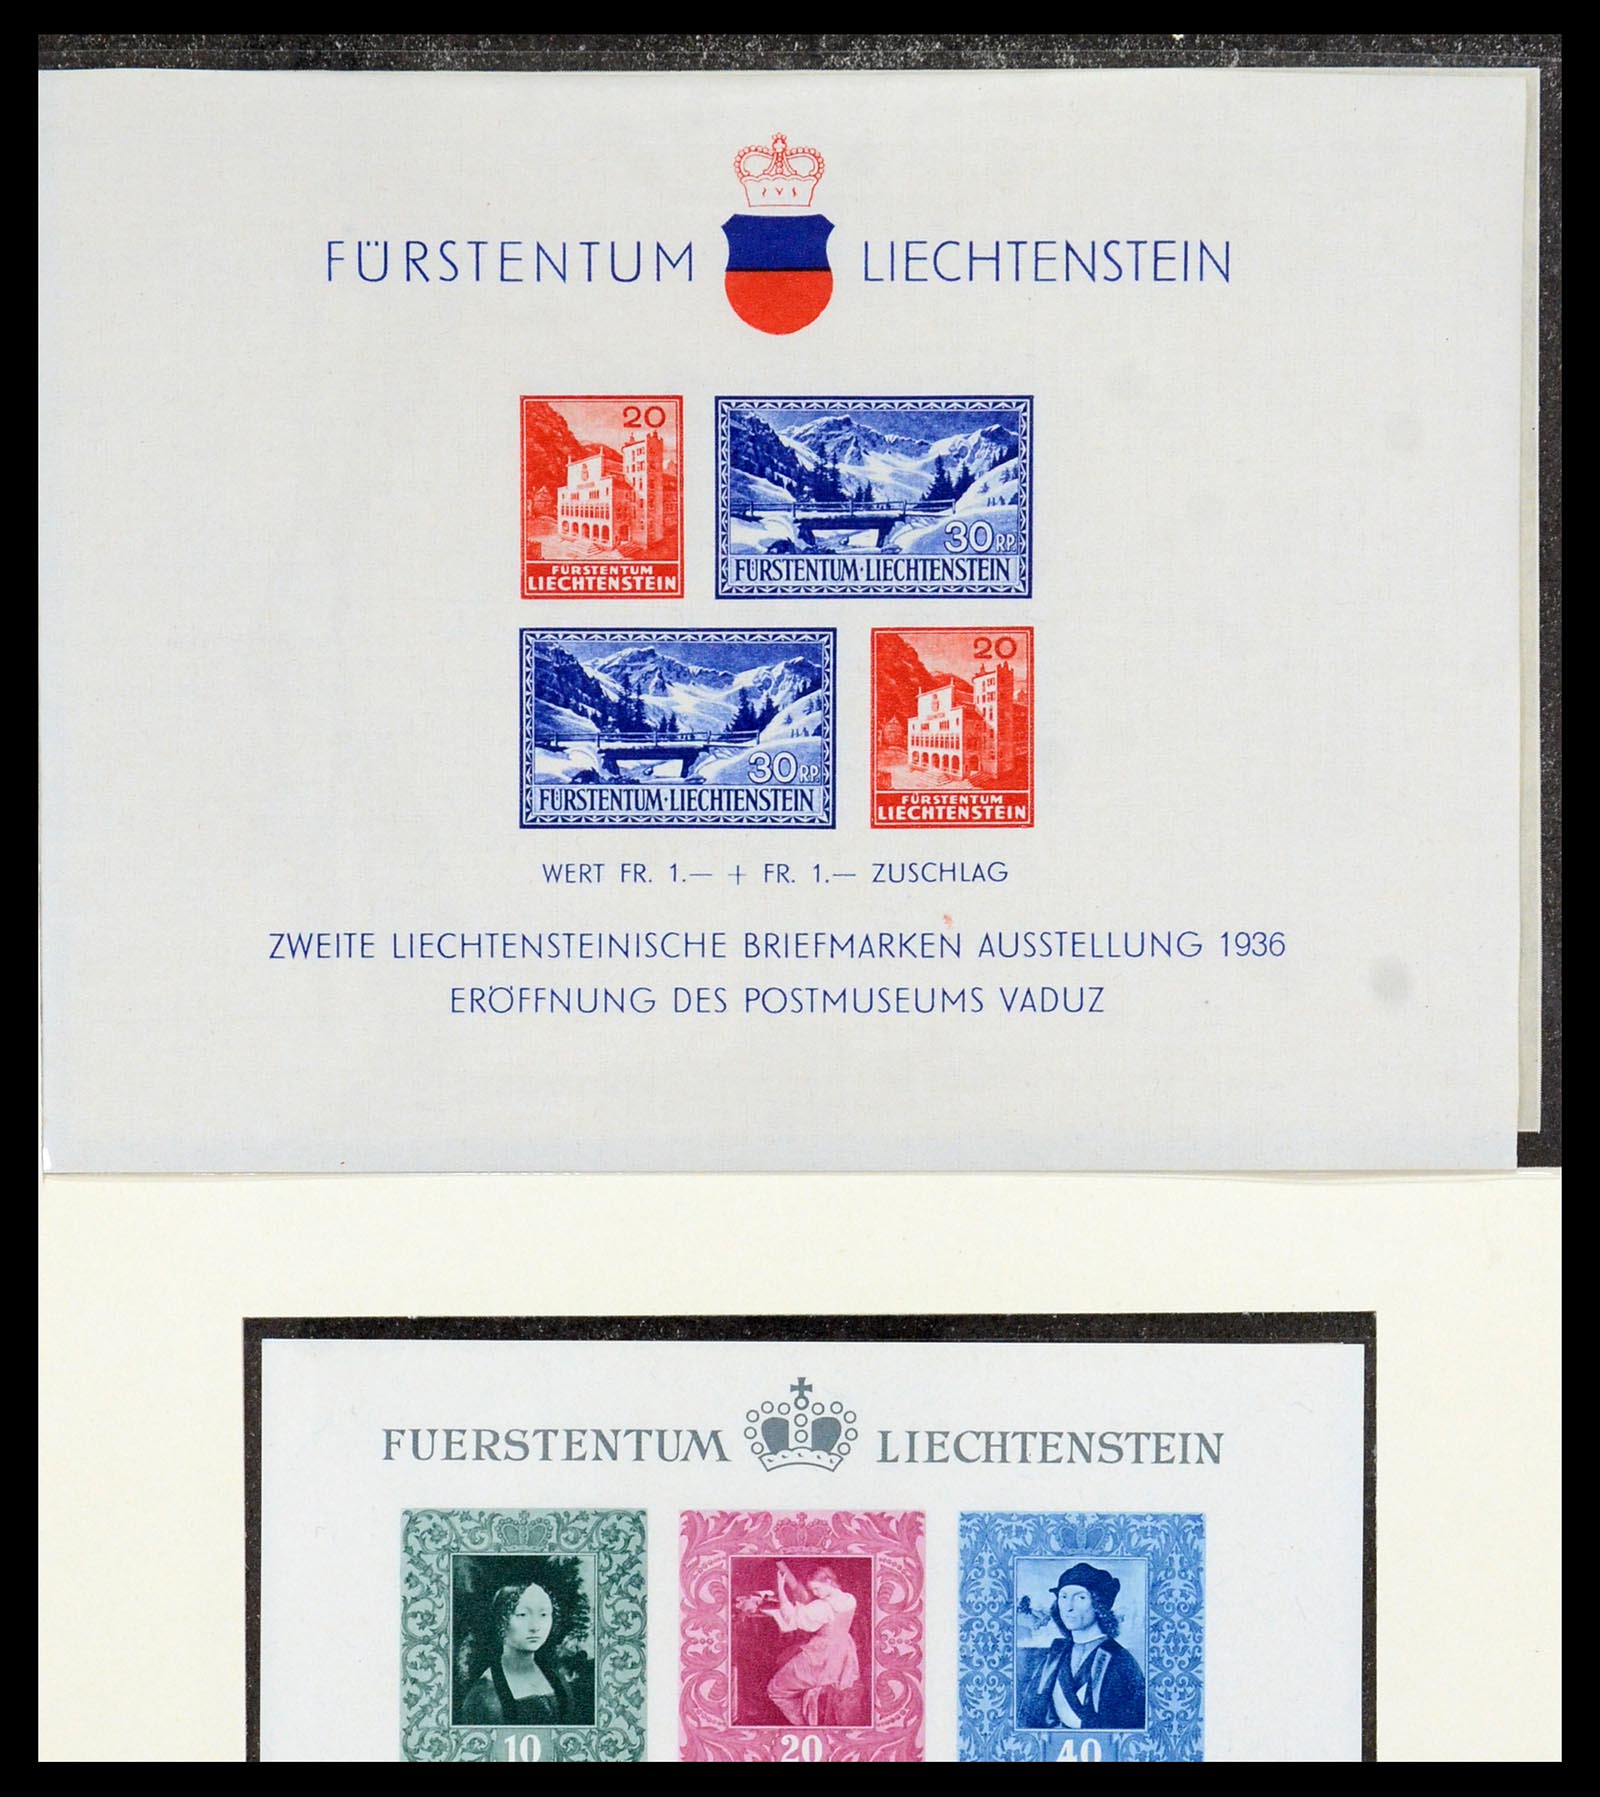 36280 050 - Stamp collection 36280 Liechtenstein souvenir sheets and sheetlets 1934-